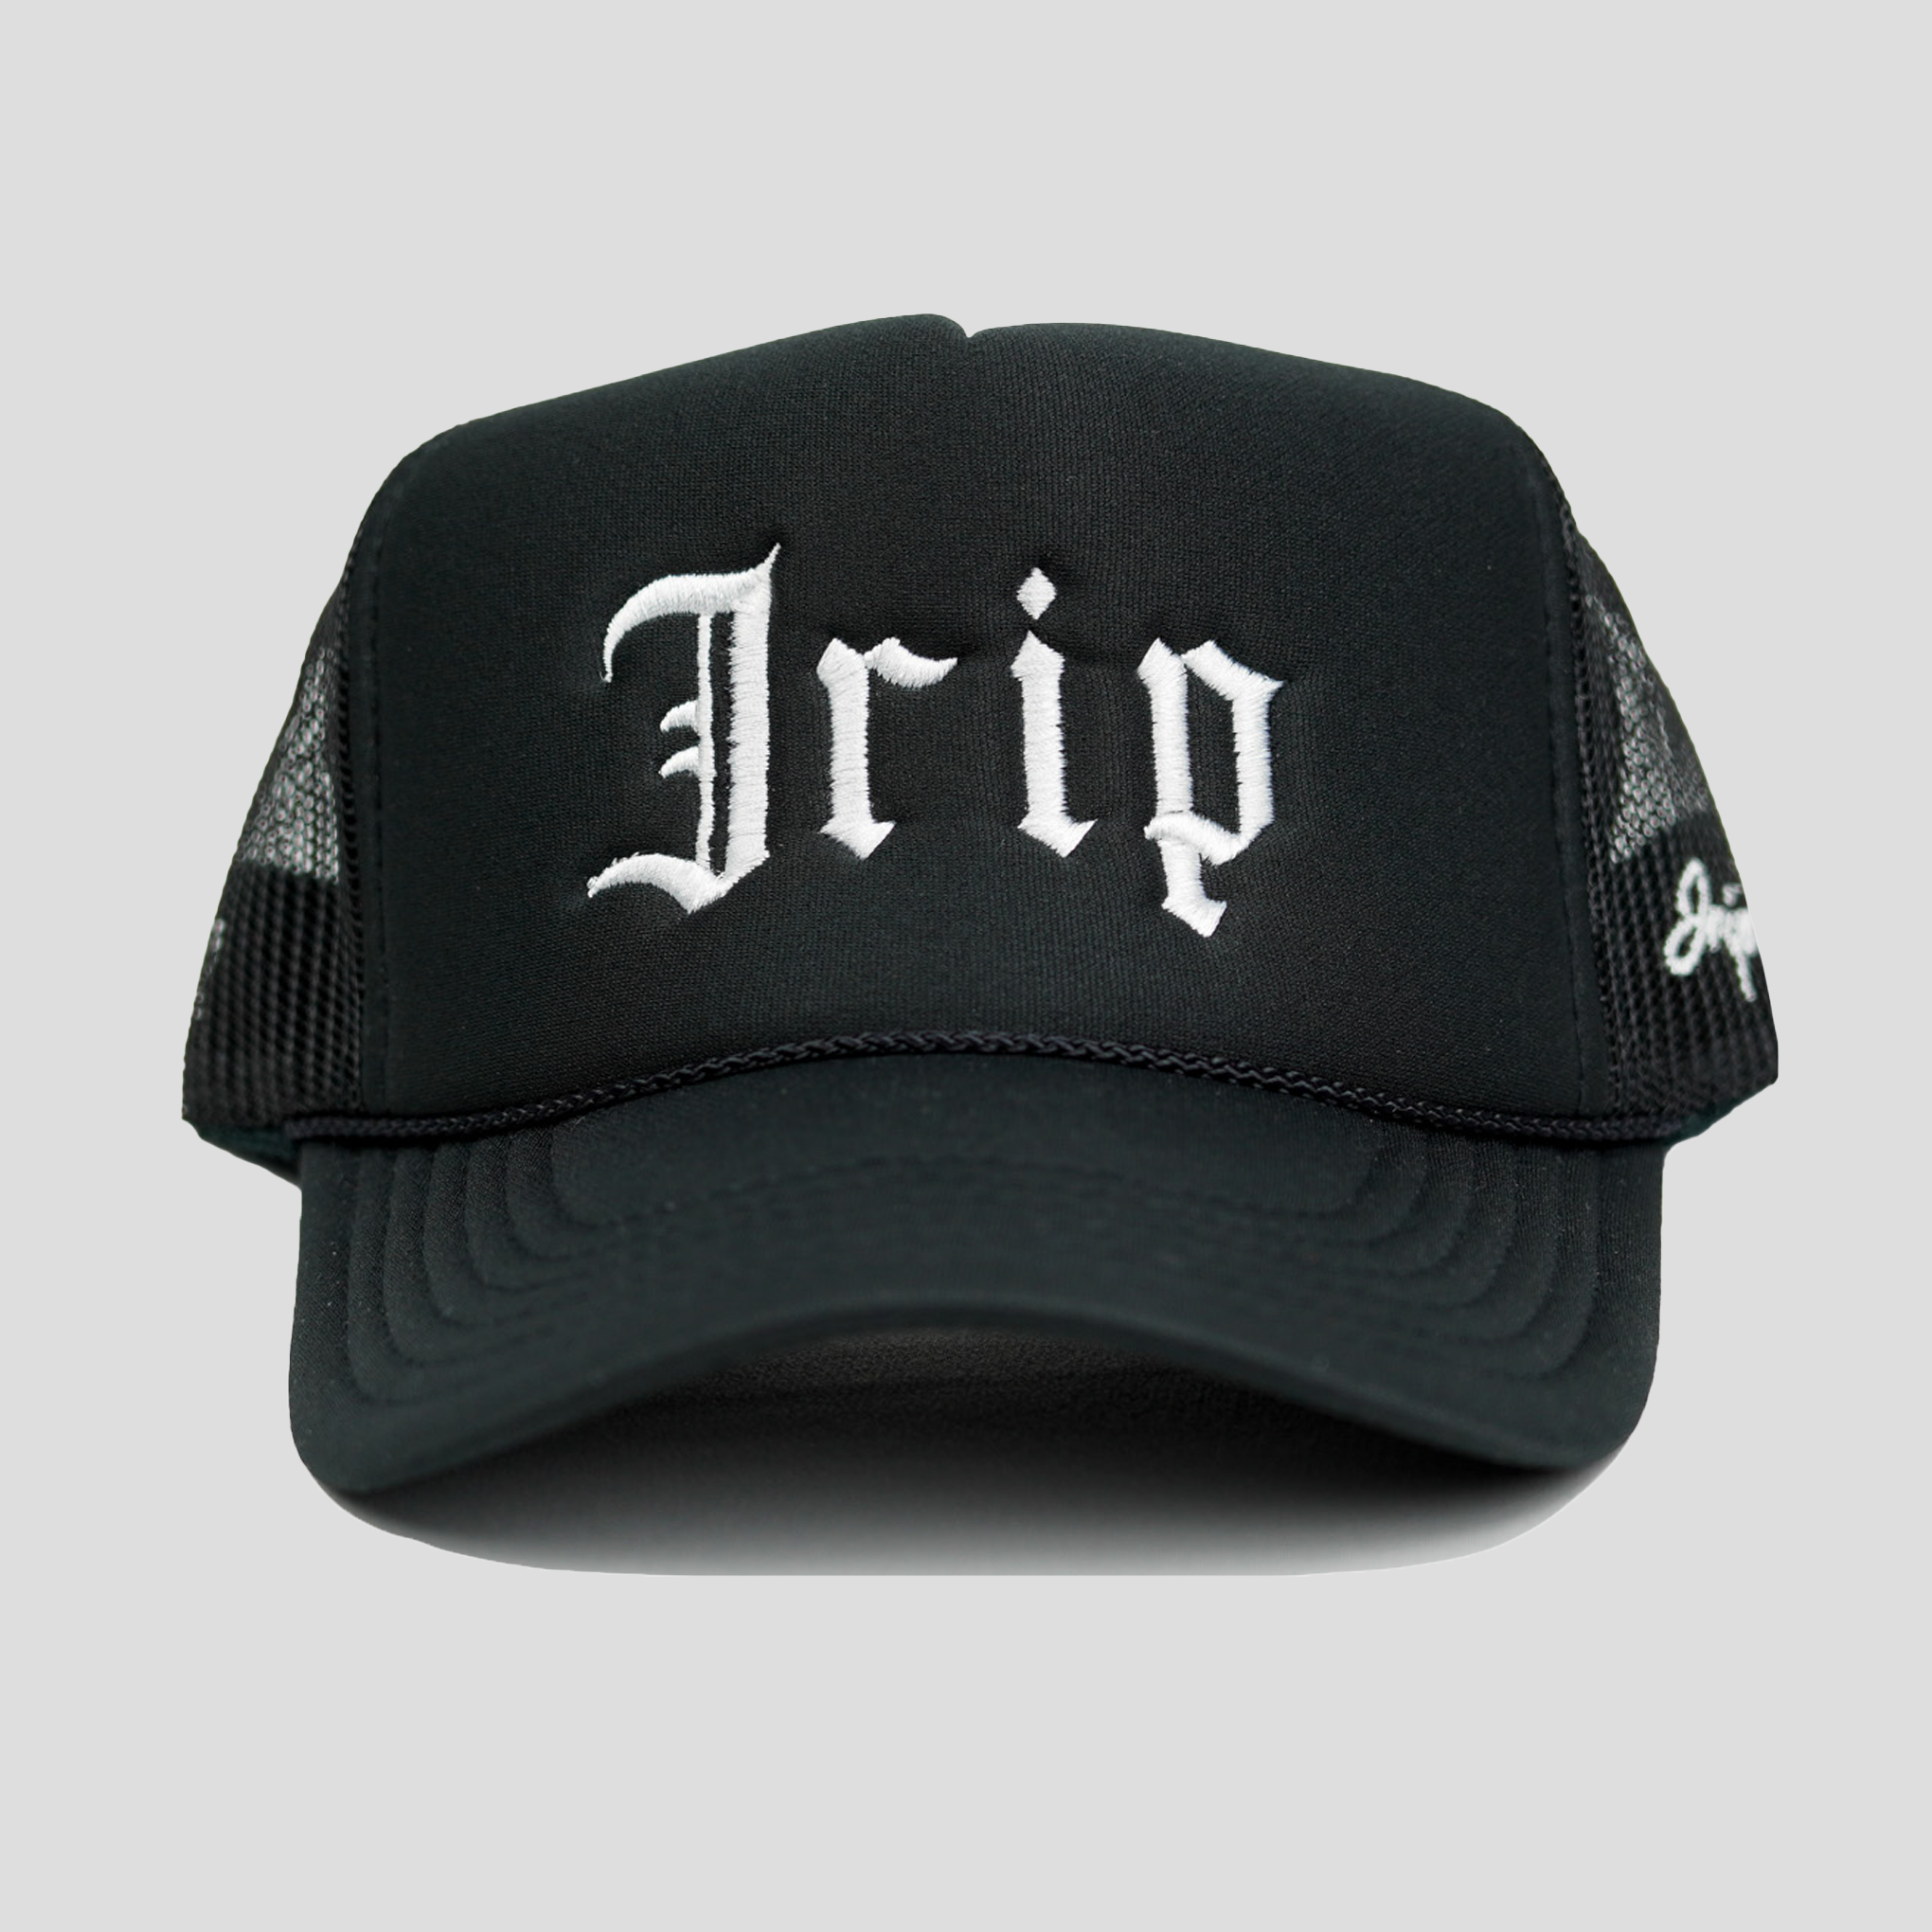 Jrip DWIW Trucker Hat (BLACK)